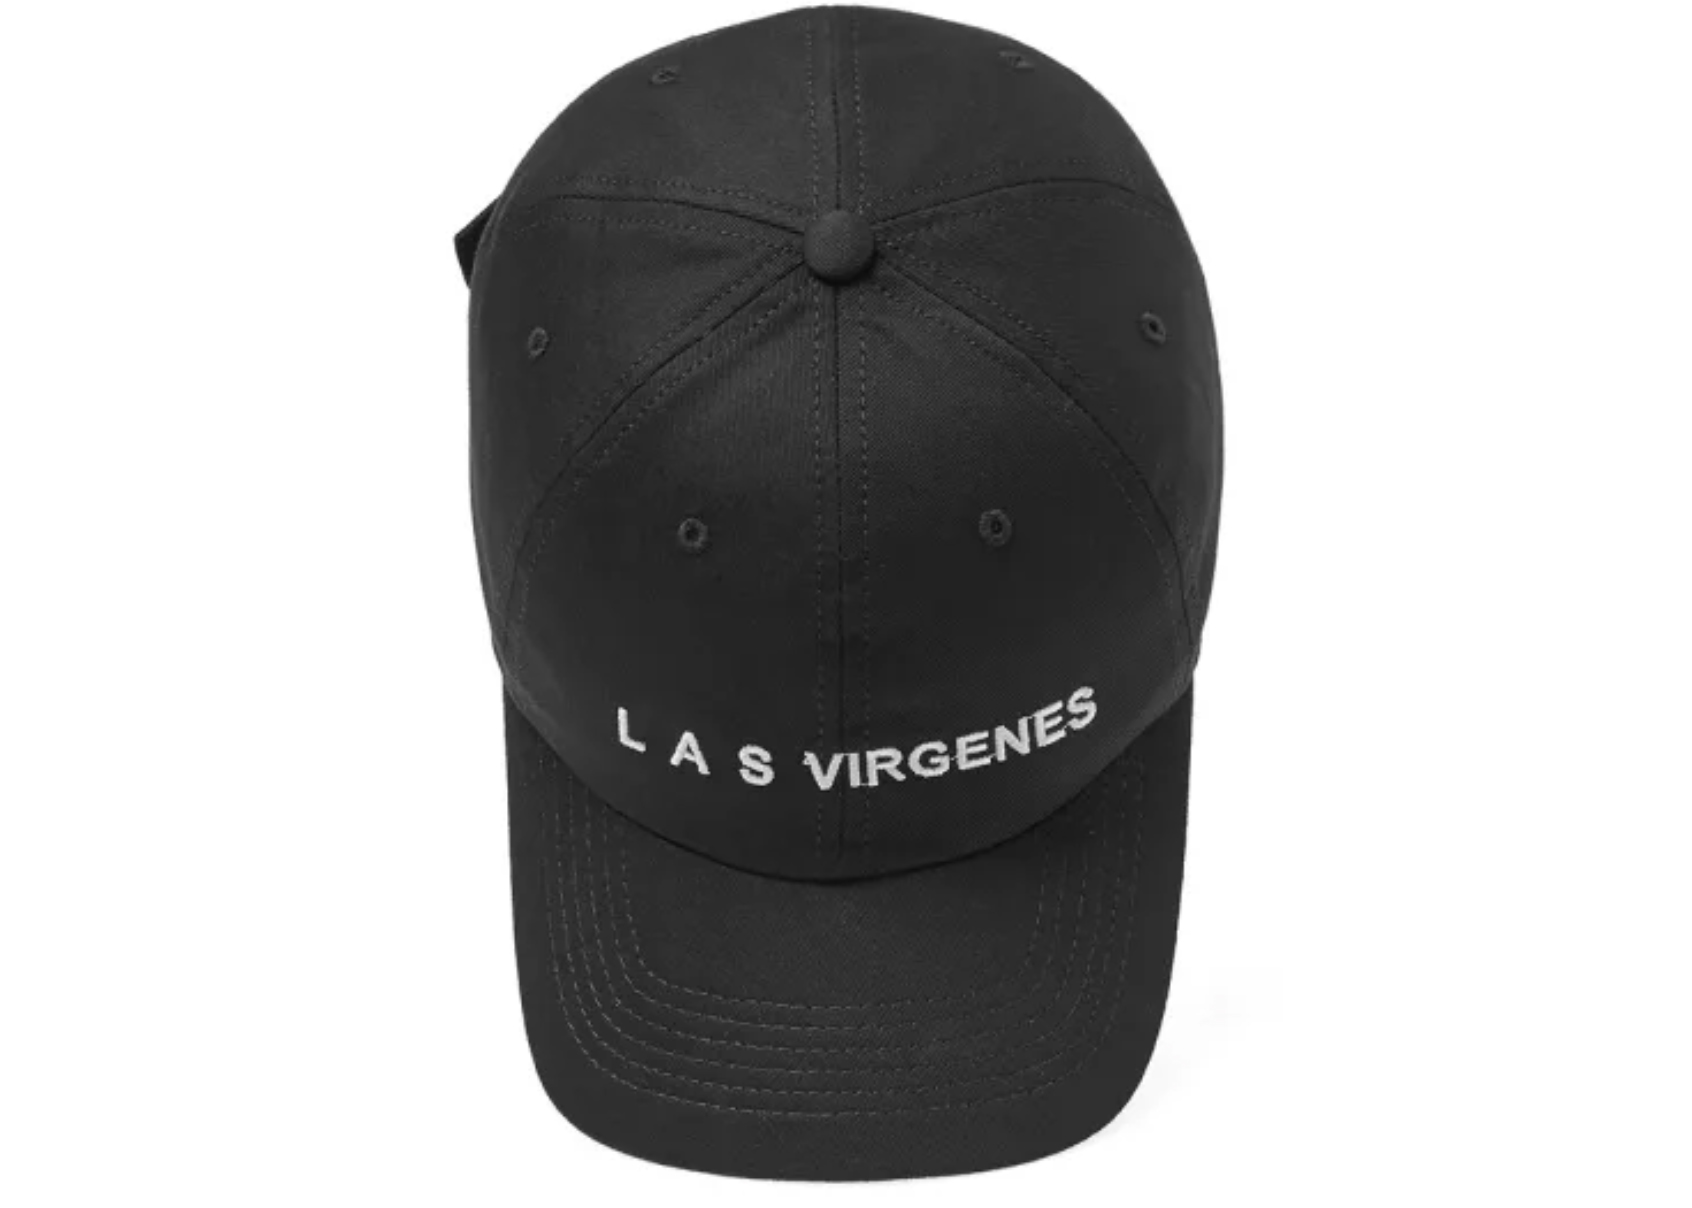 Yeezy Season 5 Las Virgenes Cap Black